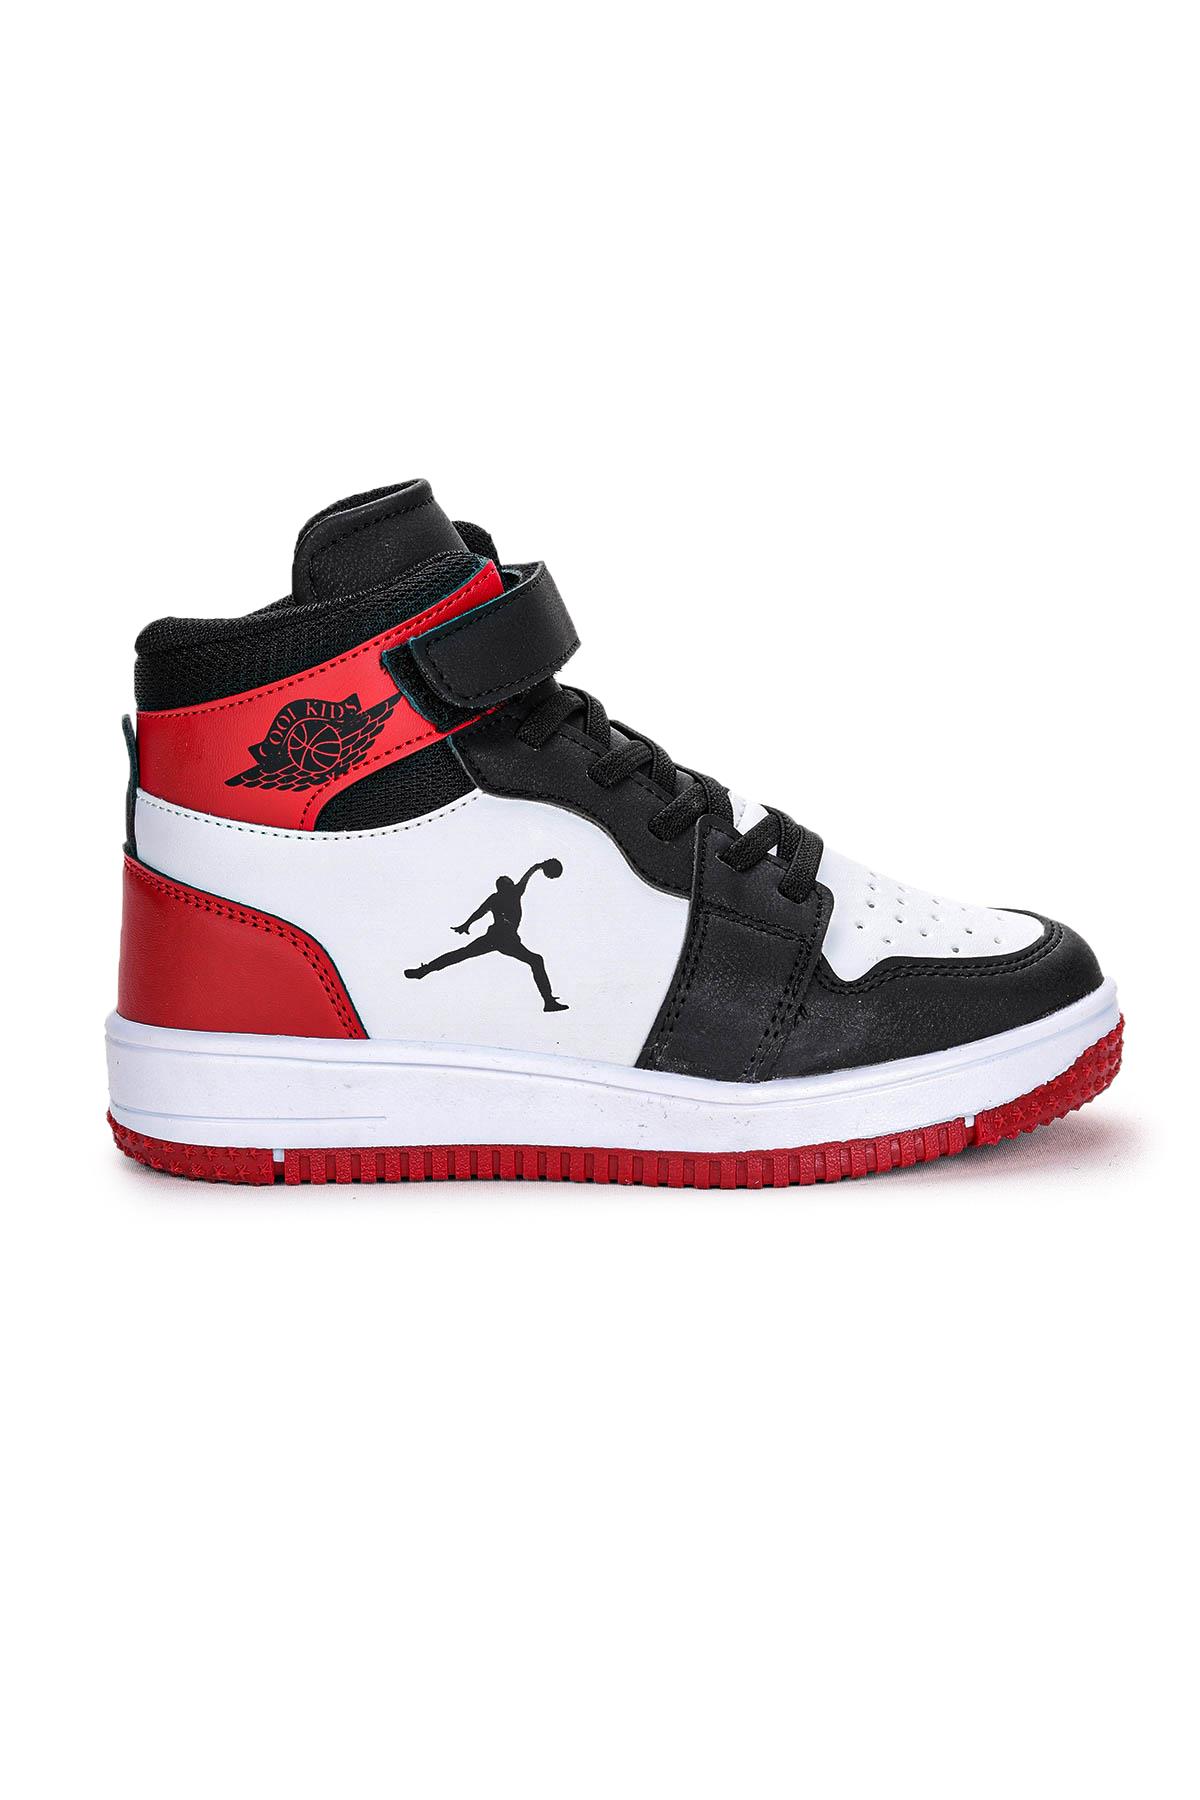 Jordan Cırtlı Basketbol Erkek Çocuk Spor Ayakkabı Siyah - Kırmızı